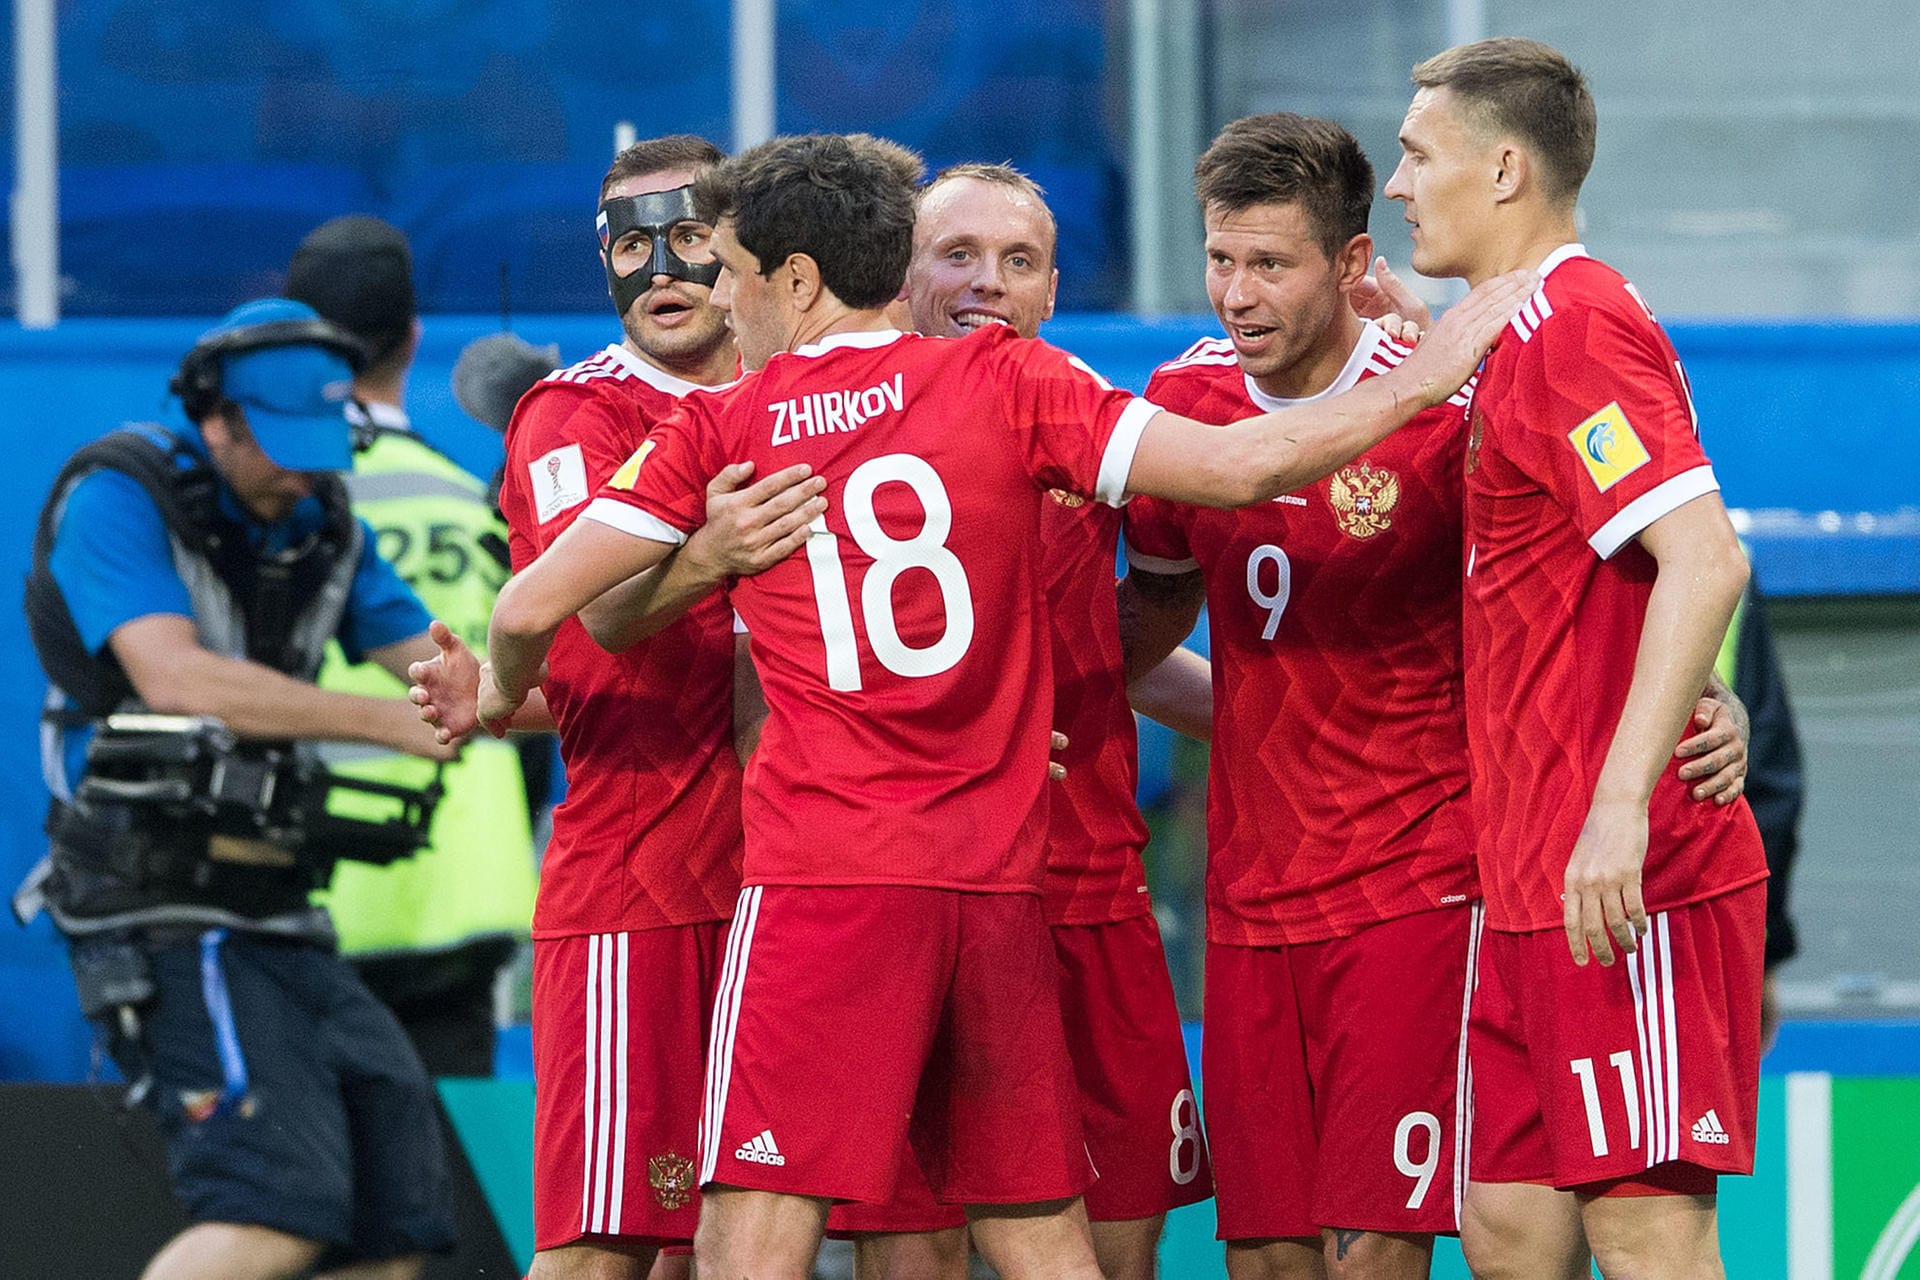 Russland ist als Gastgeber automatisch qualifiziert. Bis zum WM-Auftakt absolviert die "Sbornaja" nur Freundschaftsspiele. Außerdem nahm sie am Confed-Cup teil, scheiterte dort jedoch in der Vorrunde.